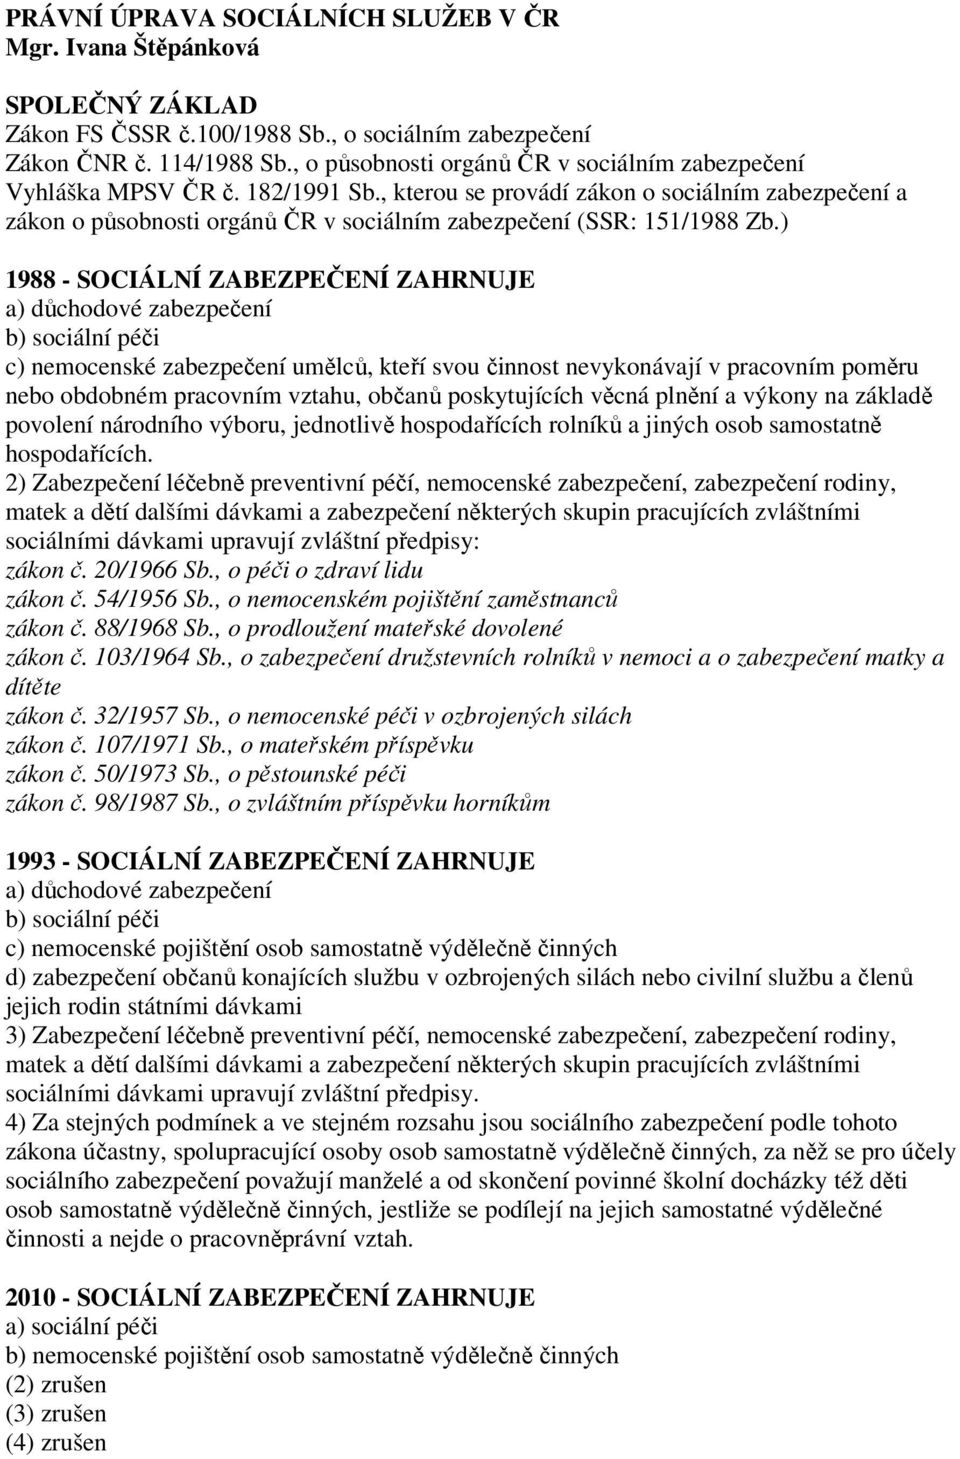 , kterou se provádí zákon o sociálním zabezpečení a zákon o působnosti orgánů ČR v sociálním zabezpečení (SSR: 151/1988 Zb.